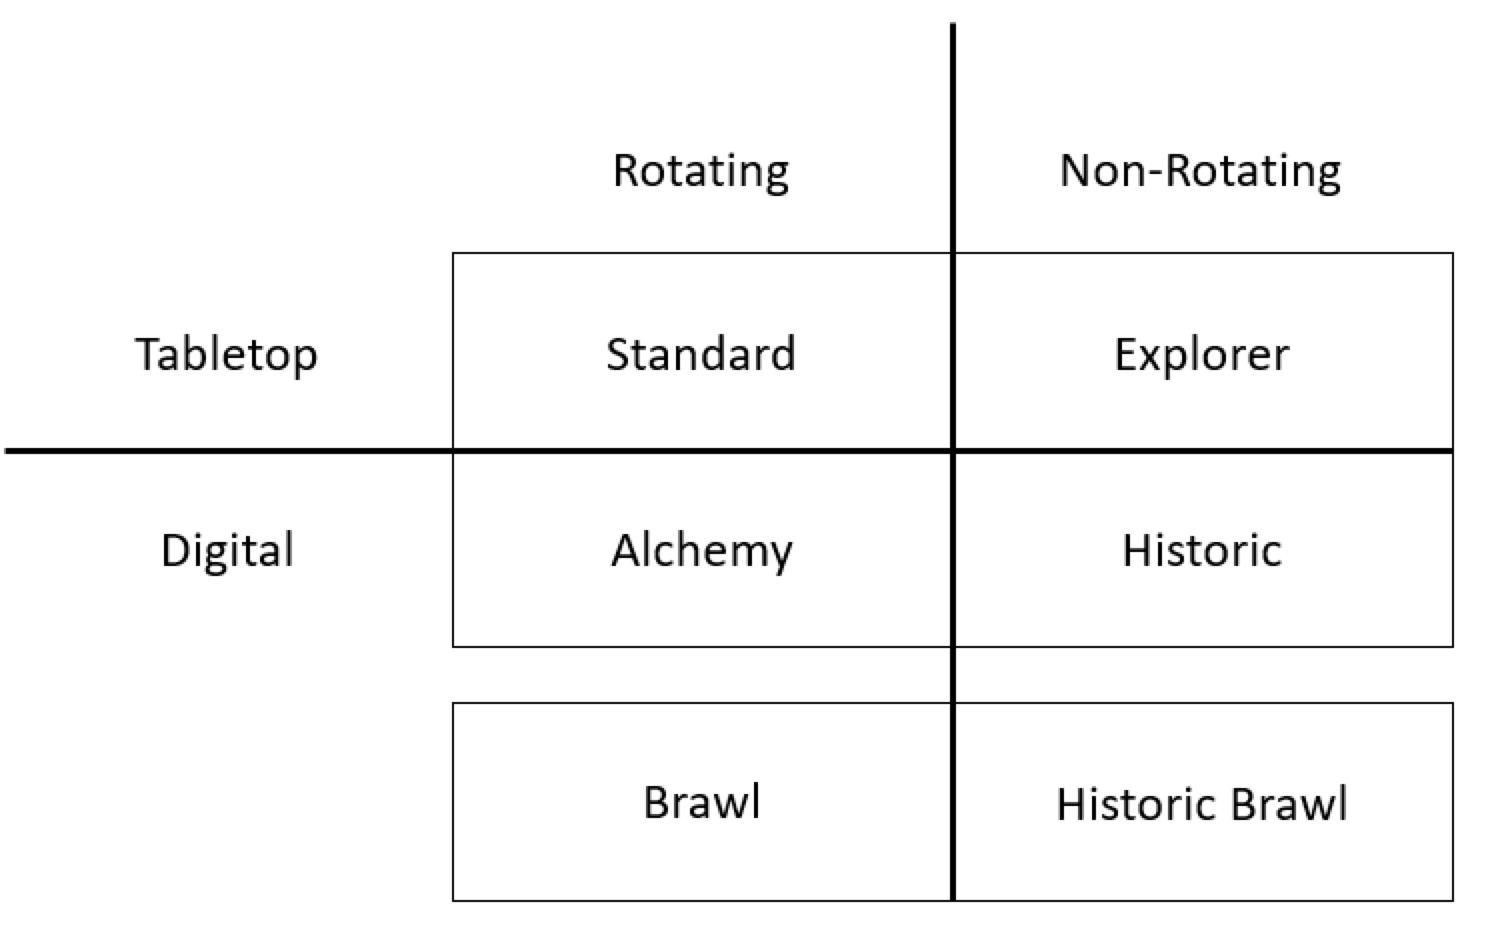 Gráfico que muestra los formatos físicos o digitales y con rotación (Estándar, Alquimia y Brawl) o sin ella (Explorador, Histórico y Brawl Histórico)